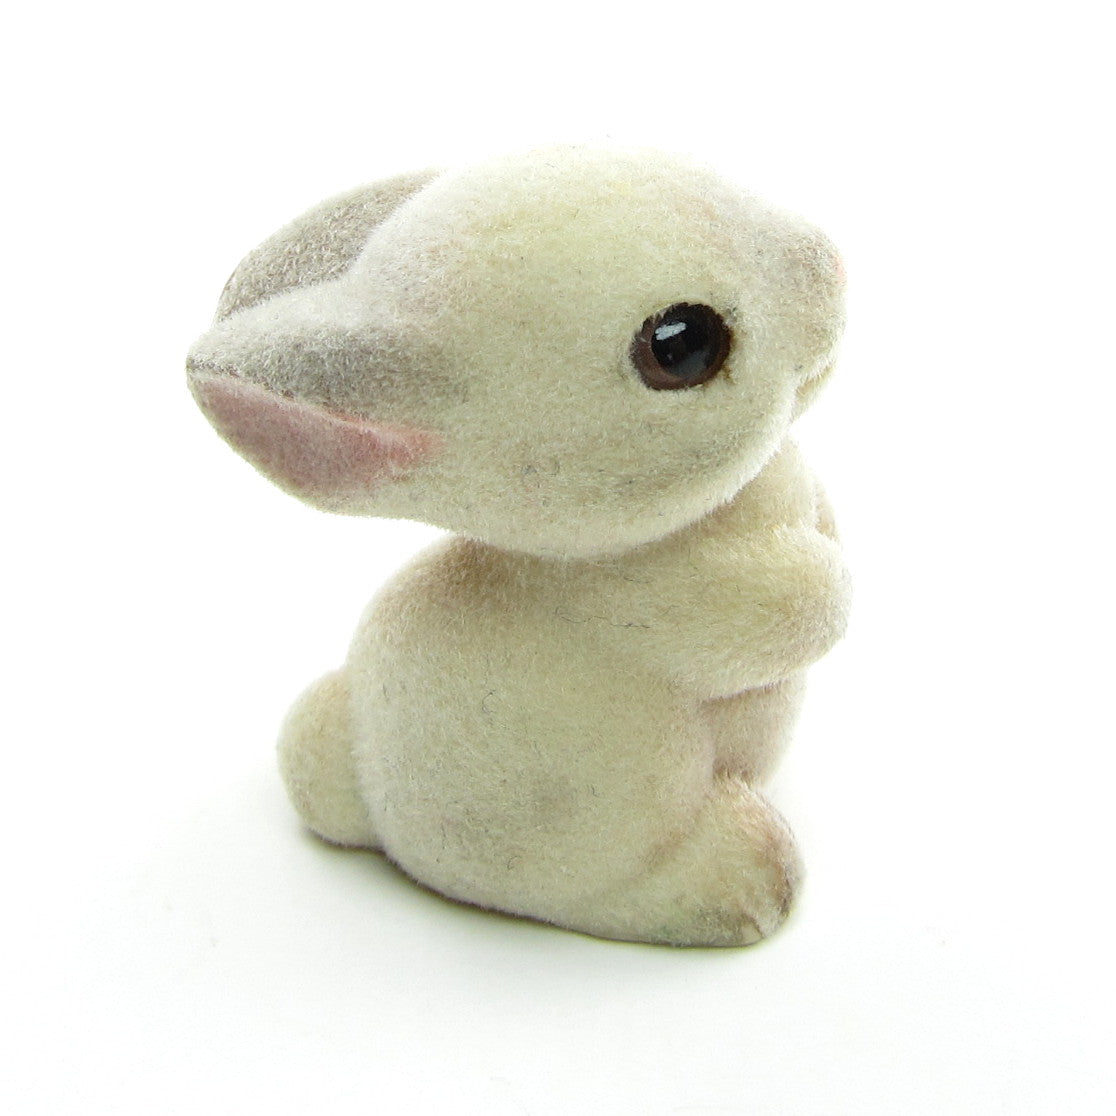 Flocked Bunny Rabbit Vintage 1982 Hallmark Merry Miniatures Figurine 